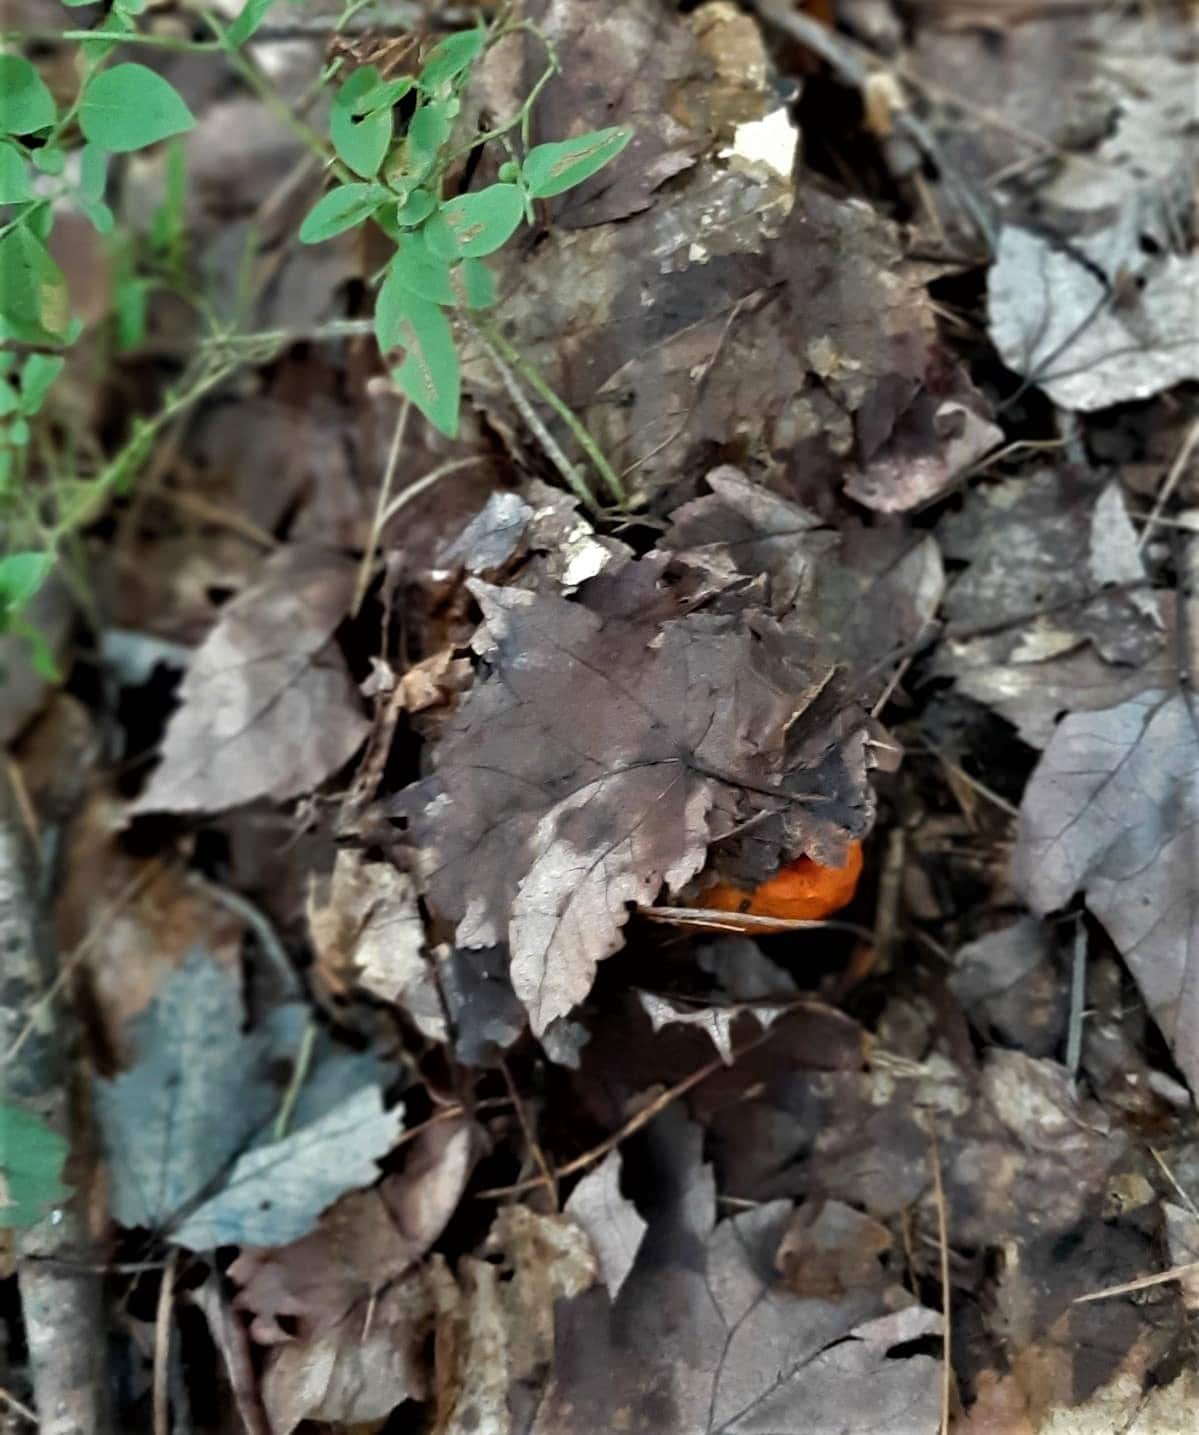 Lobster mushroom peeking out of leaves